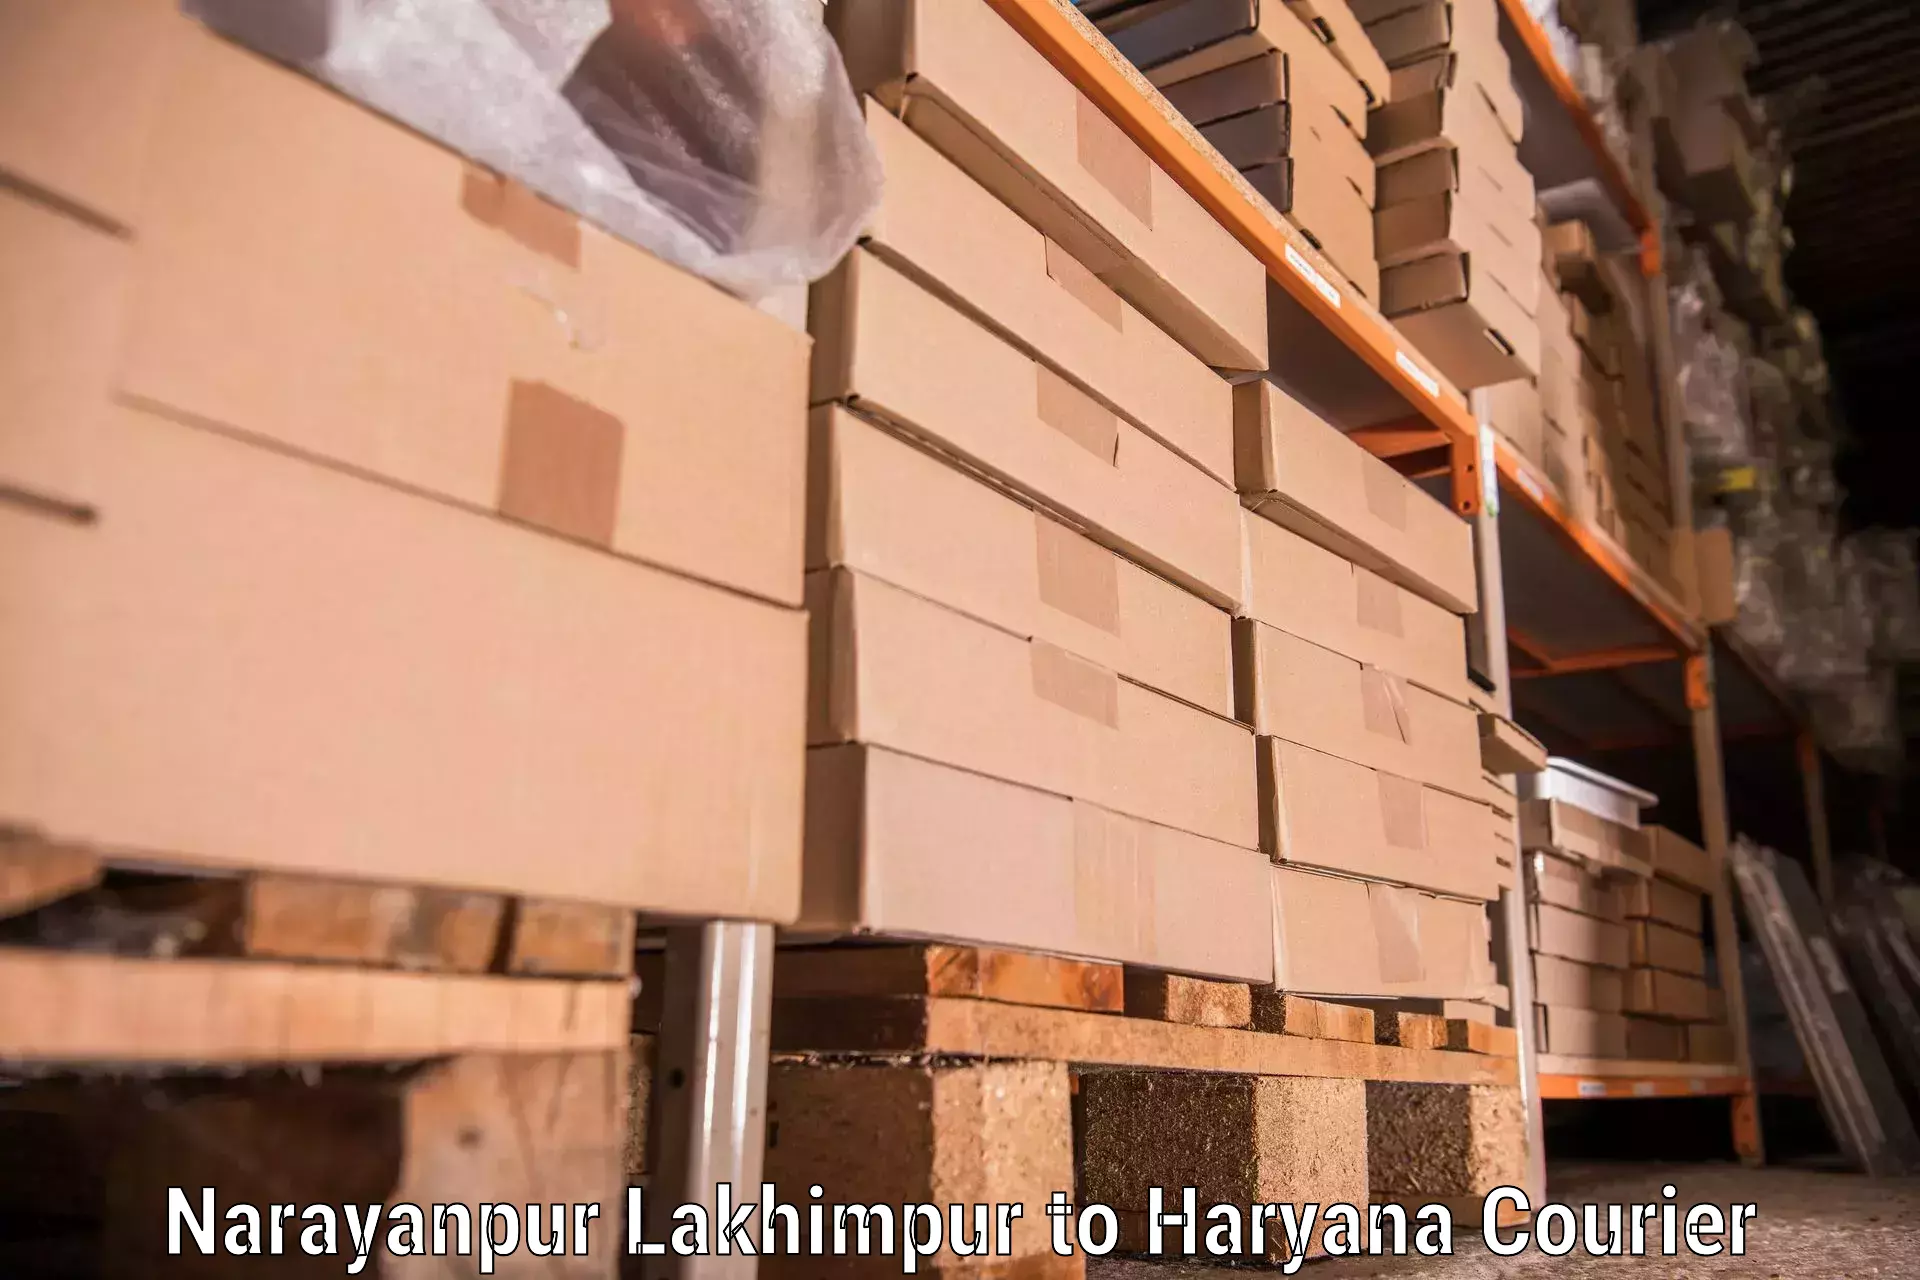 Furniture moving experts Narayanpur Lakhimpur to Bilaspur Haryana